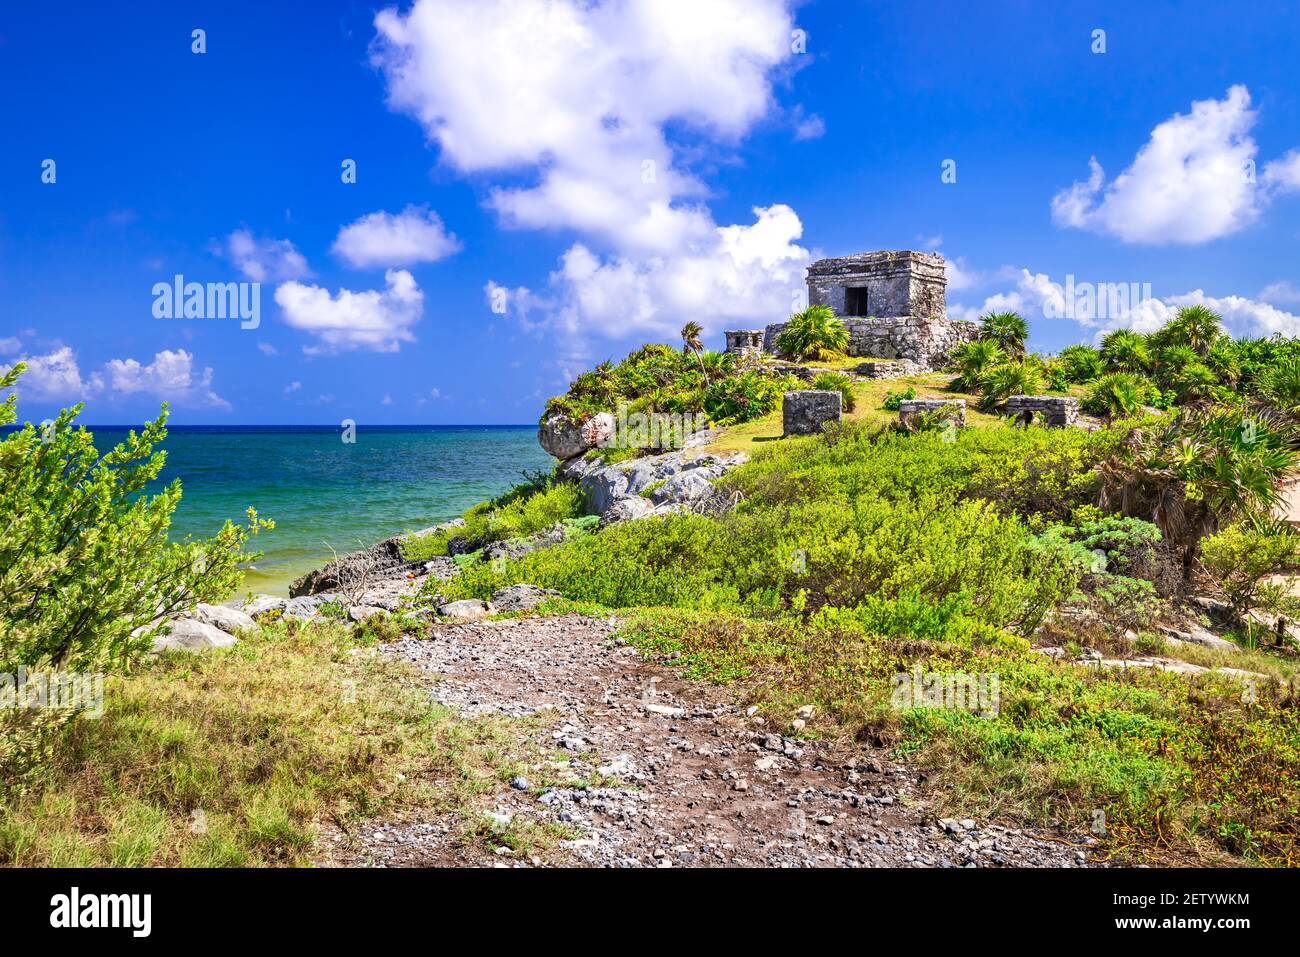 Tulum maya ruins and Caribbean Sea, Yucatan Peninsula in Mexico. Stock Photo